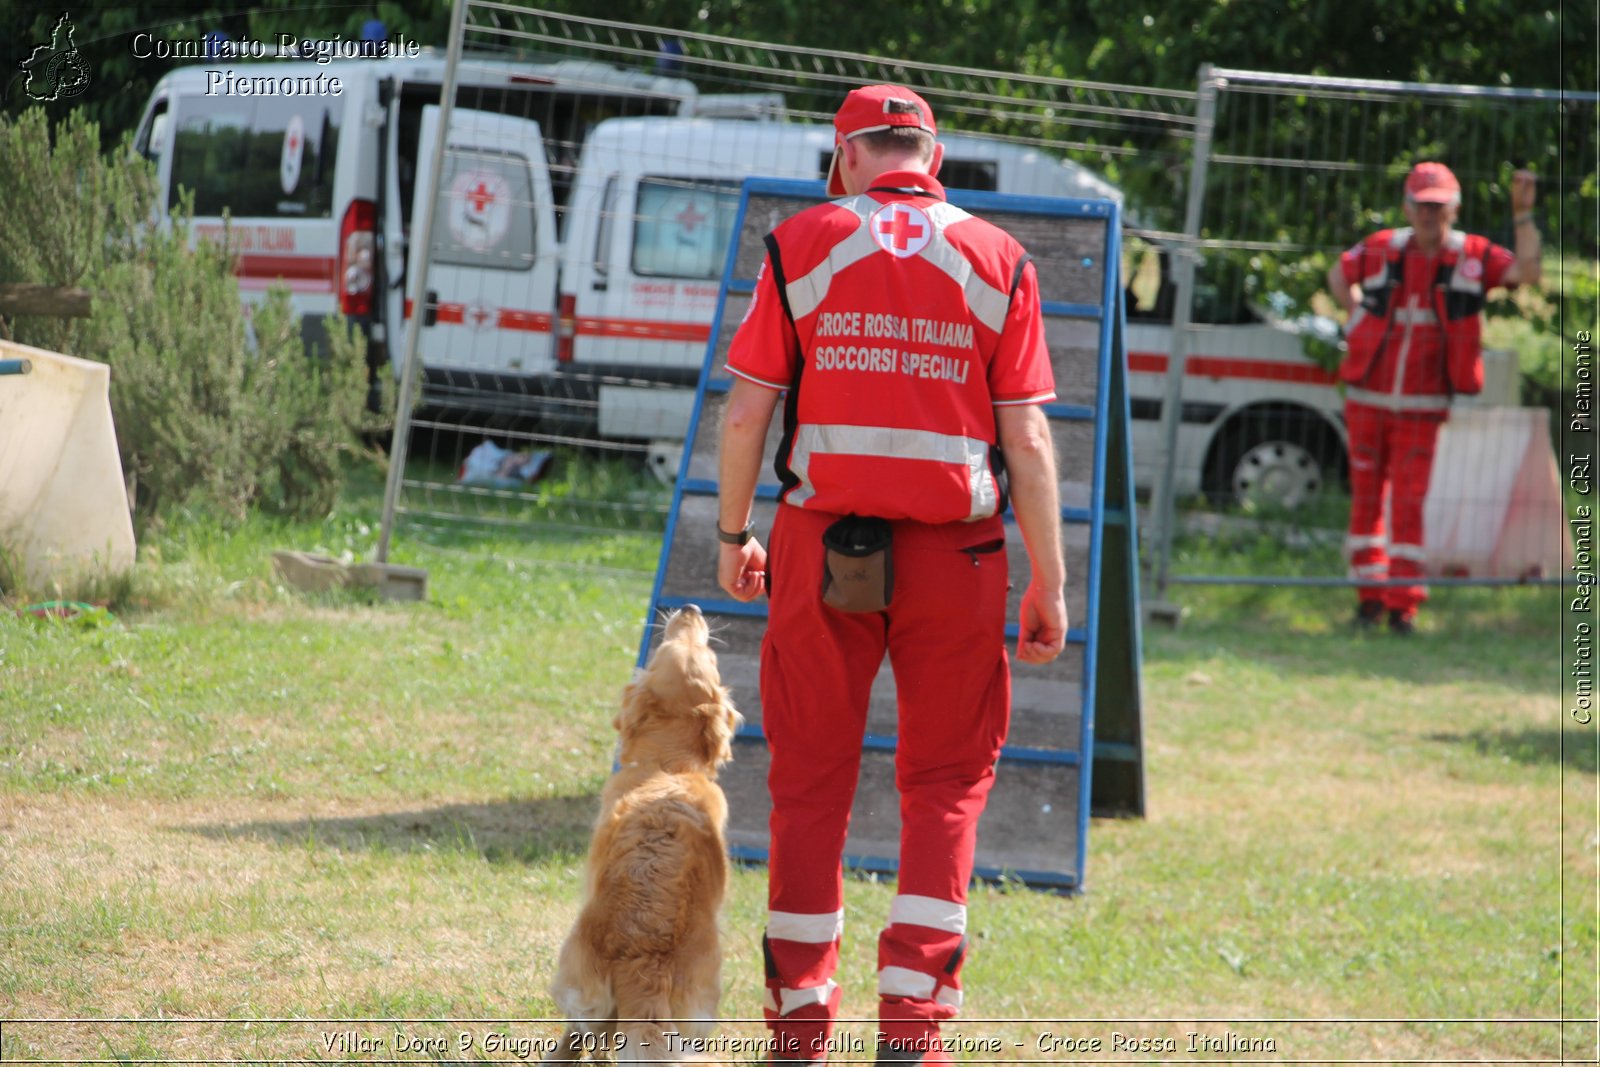 Villar Dora 9 Giugno 2019 - Trentennale dalla Fondazione - Croce Rossa Italiana - Comitato Regionale del Piemonte